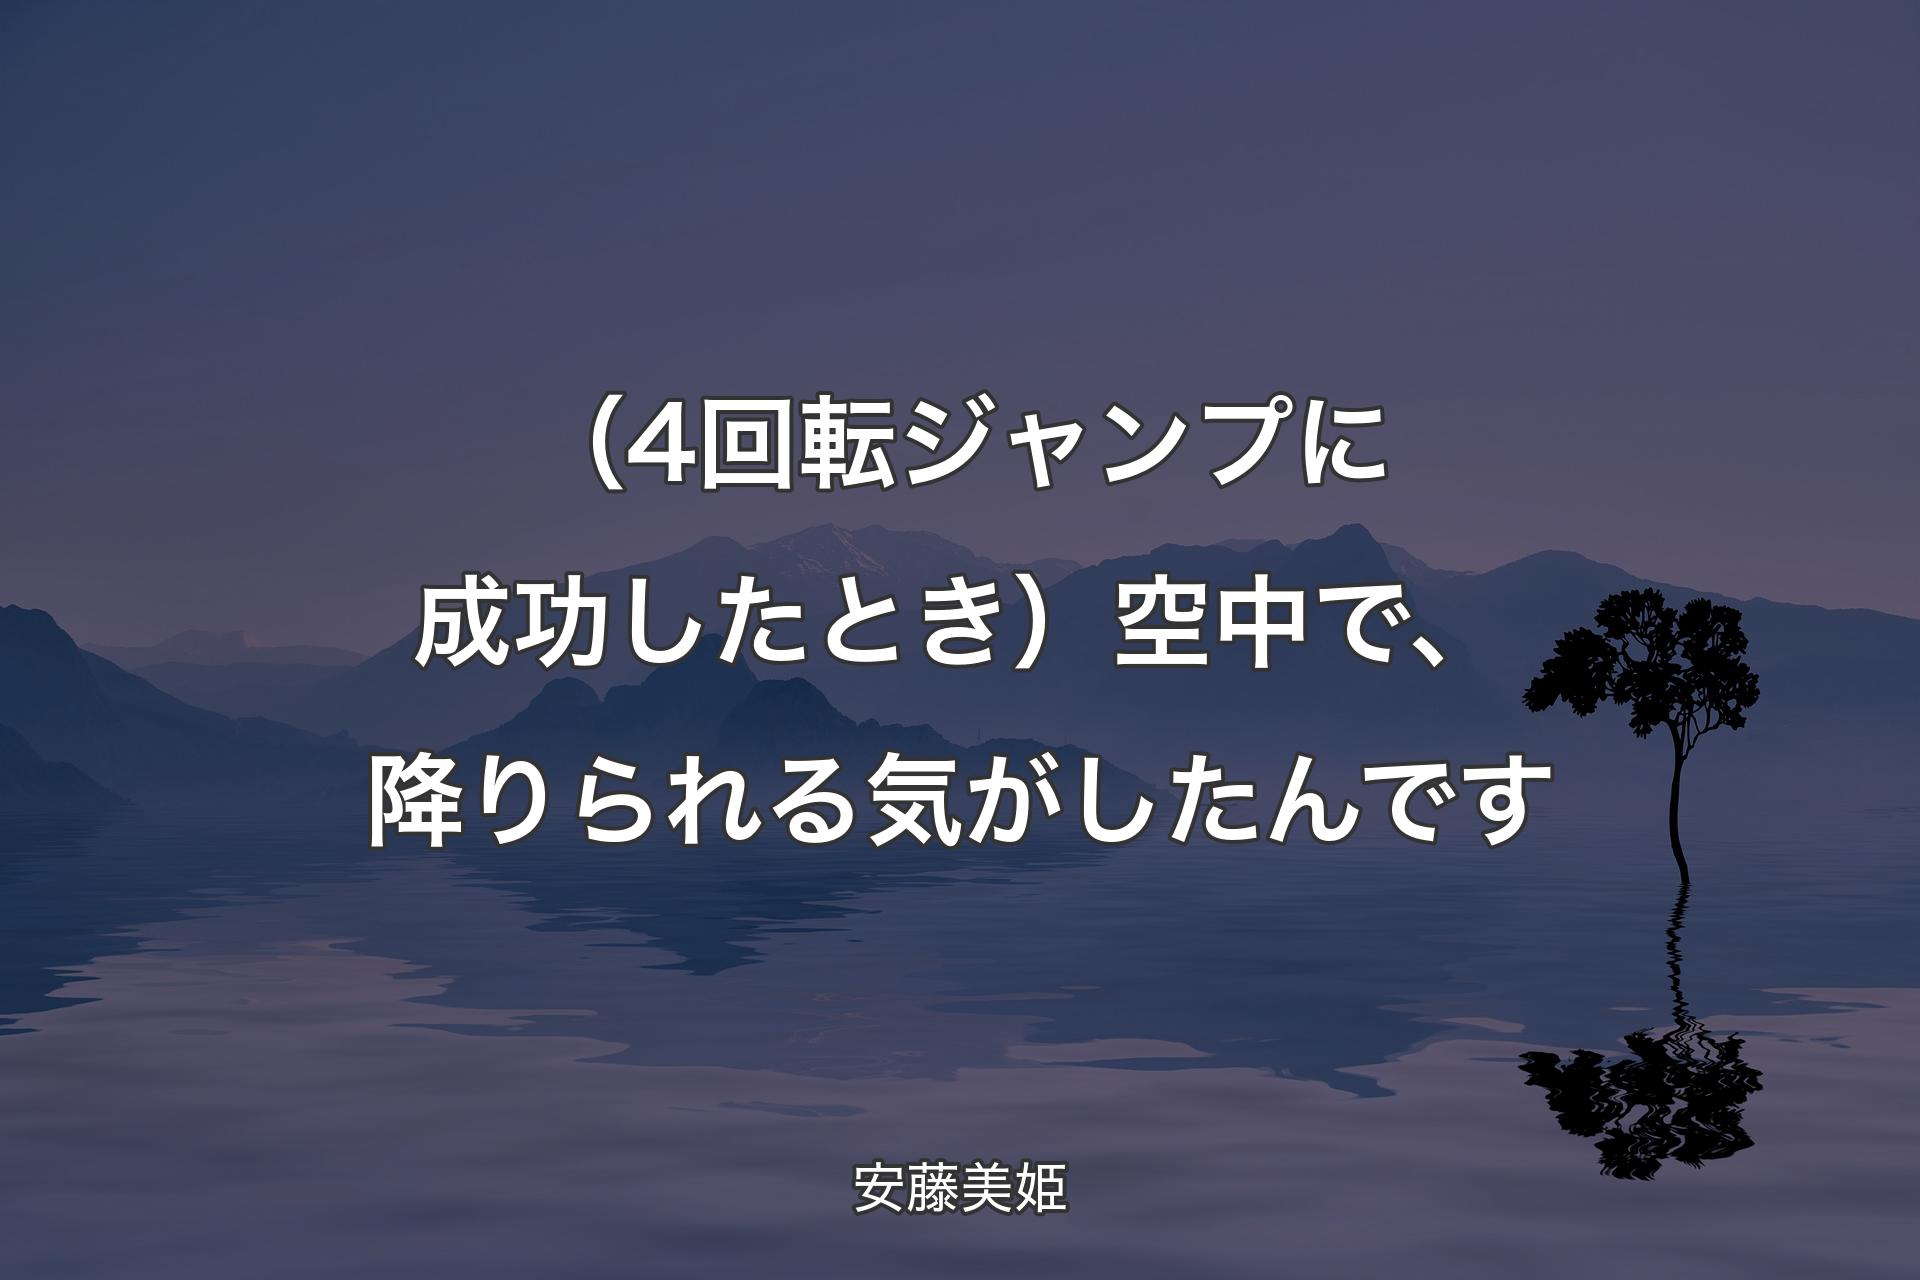 【背景4】（4回転ジャンプに成功したとき）空中で、降りられる気がしたんです - 安藤美姫